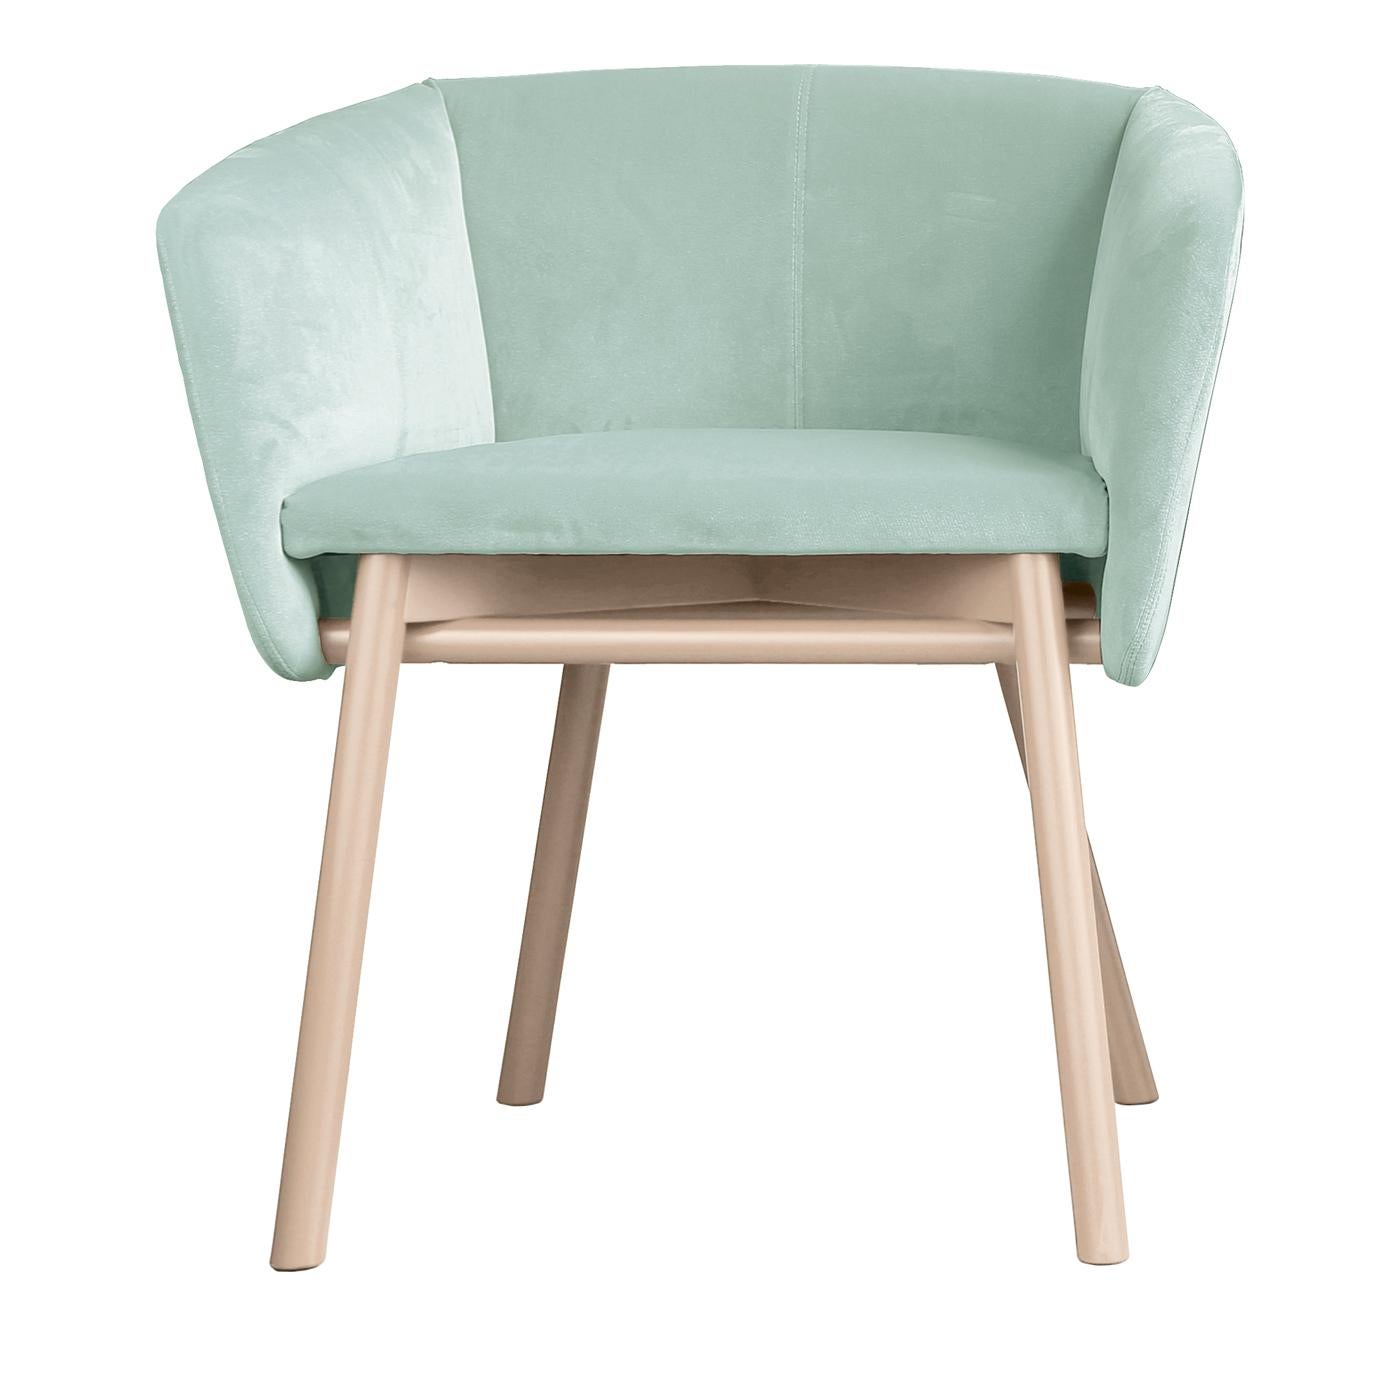 Italian Balù Pale Green Chair by Emilio Nanni For Sale